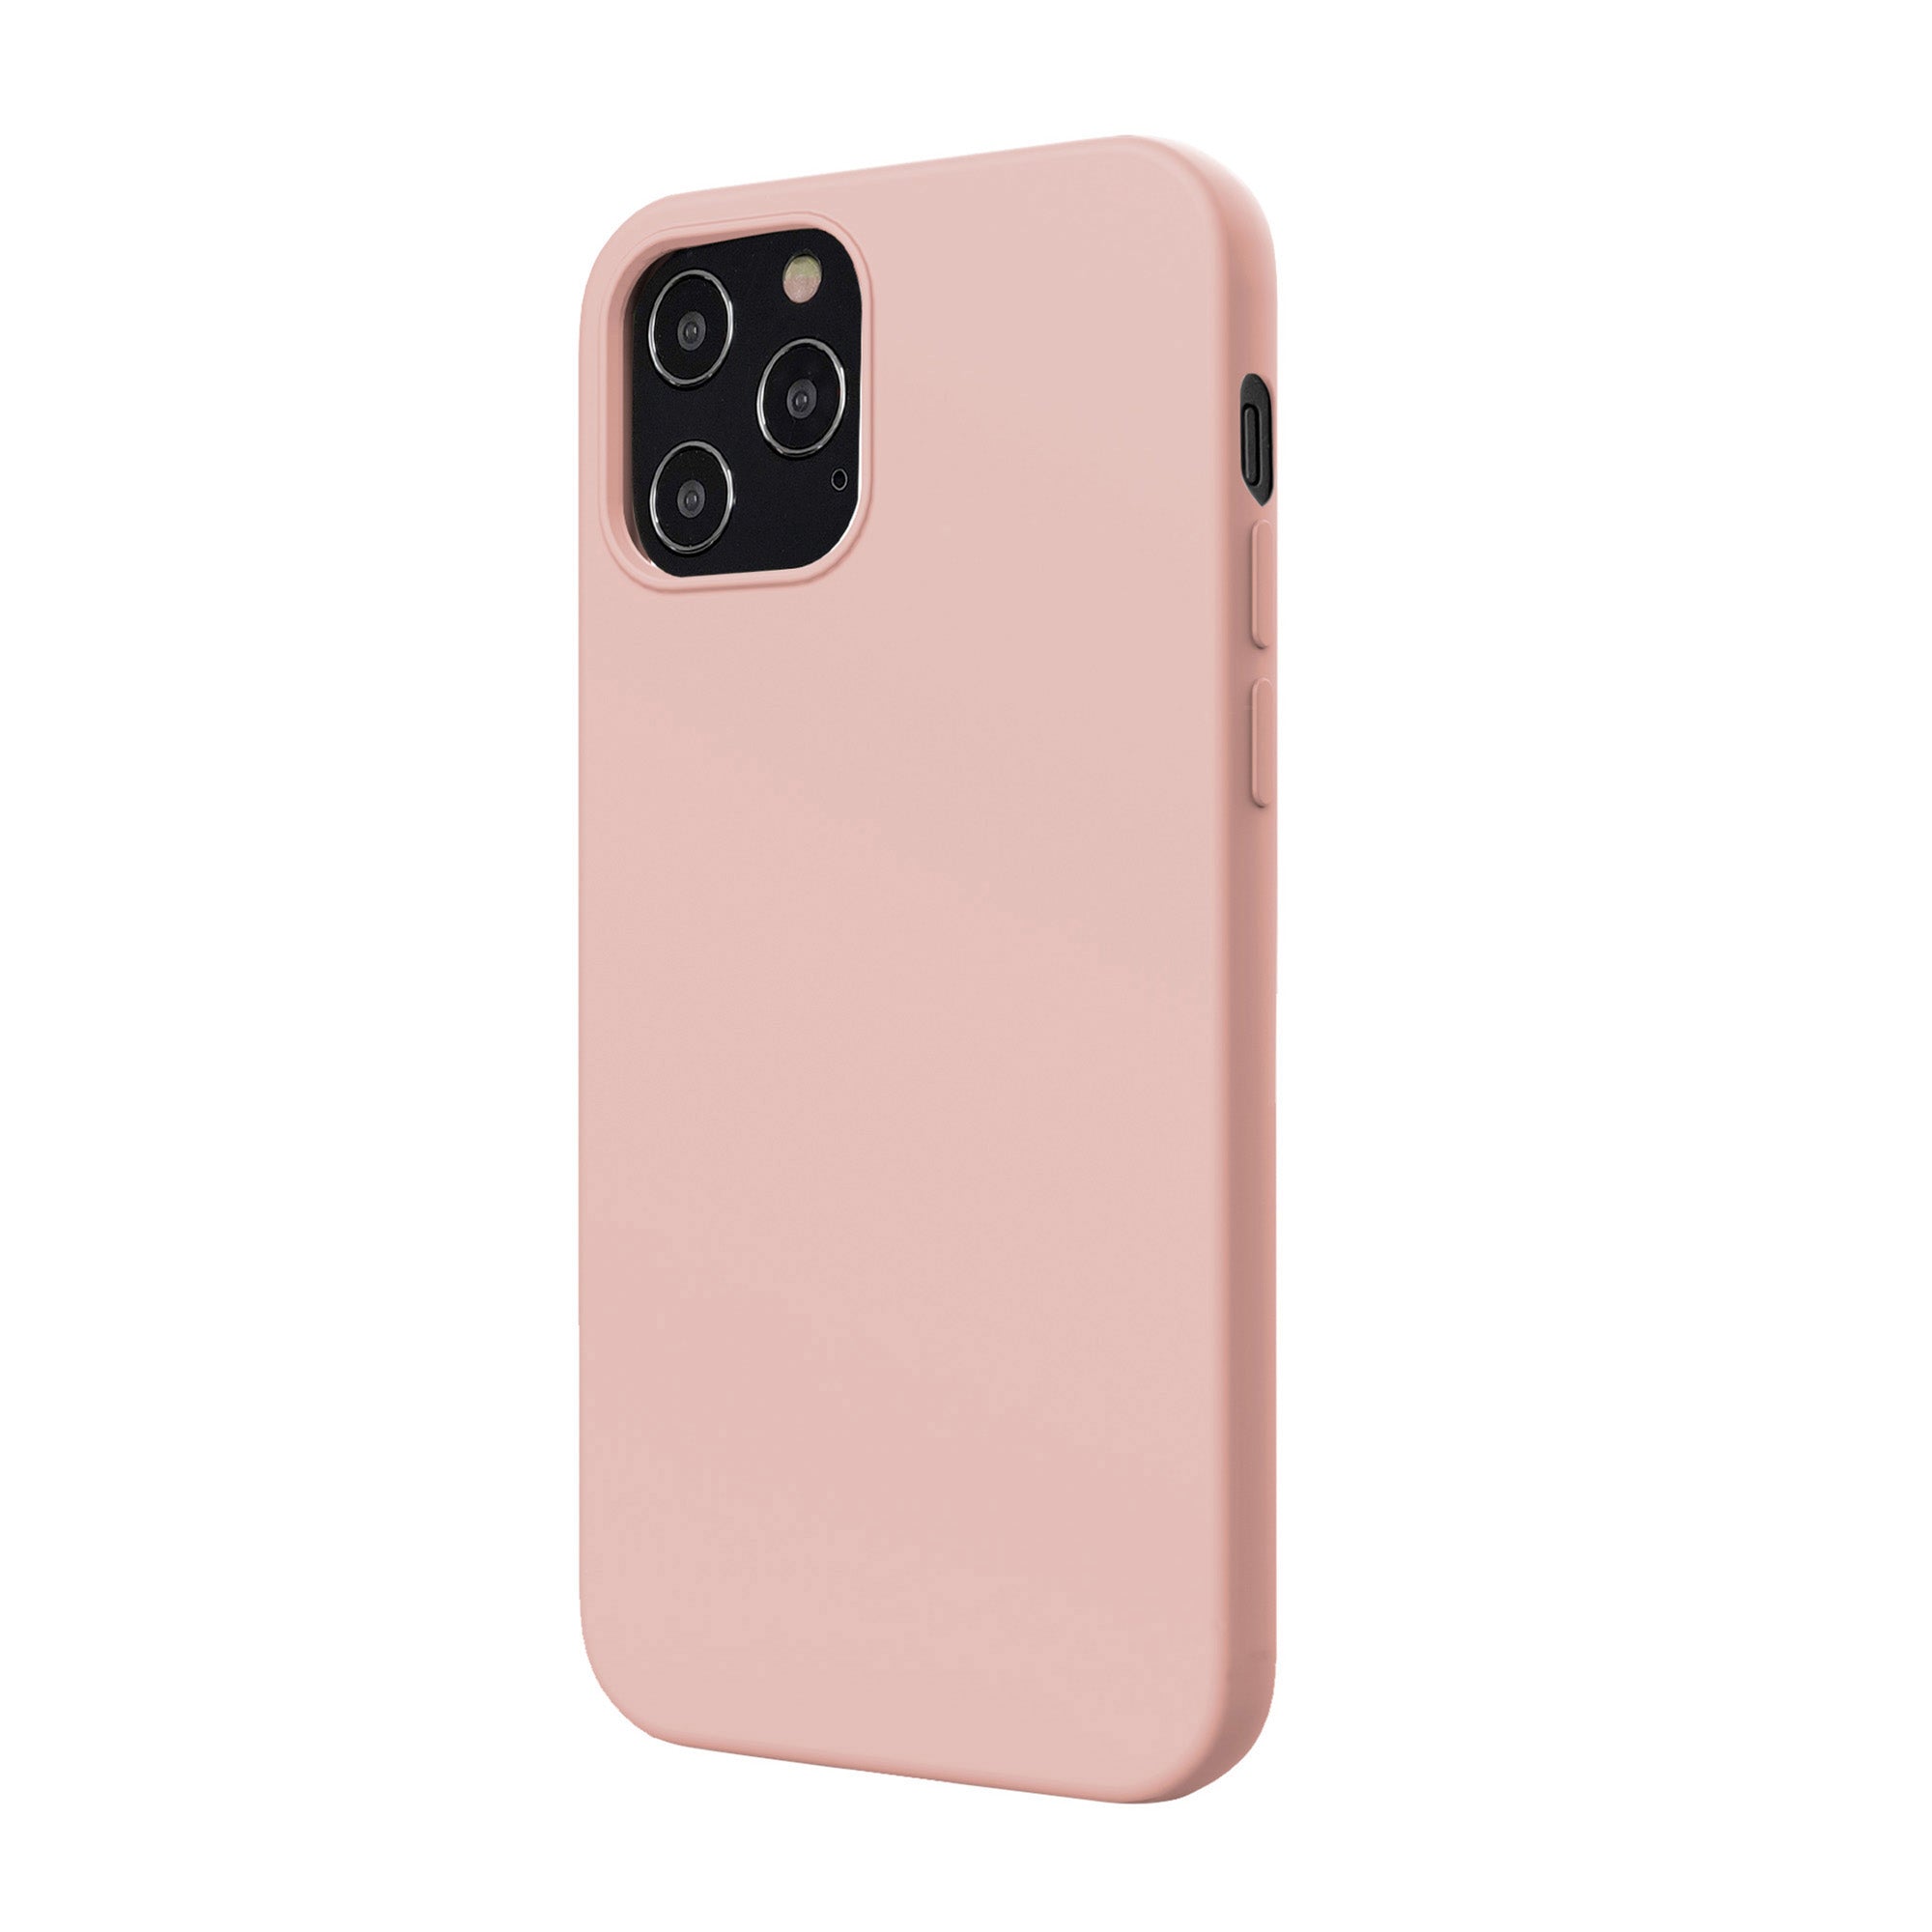 iPhone 12 Pro Max Uunique Pink Liquid Silicone Case - 15-07631